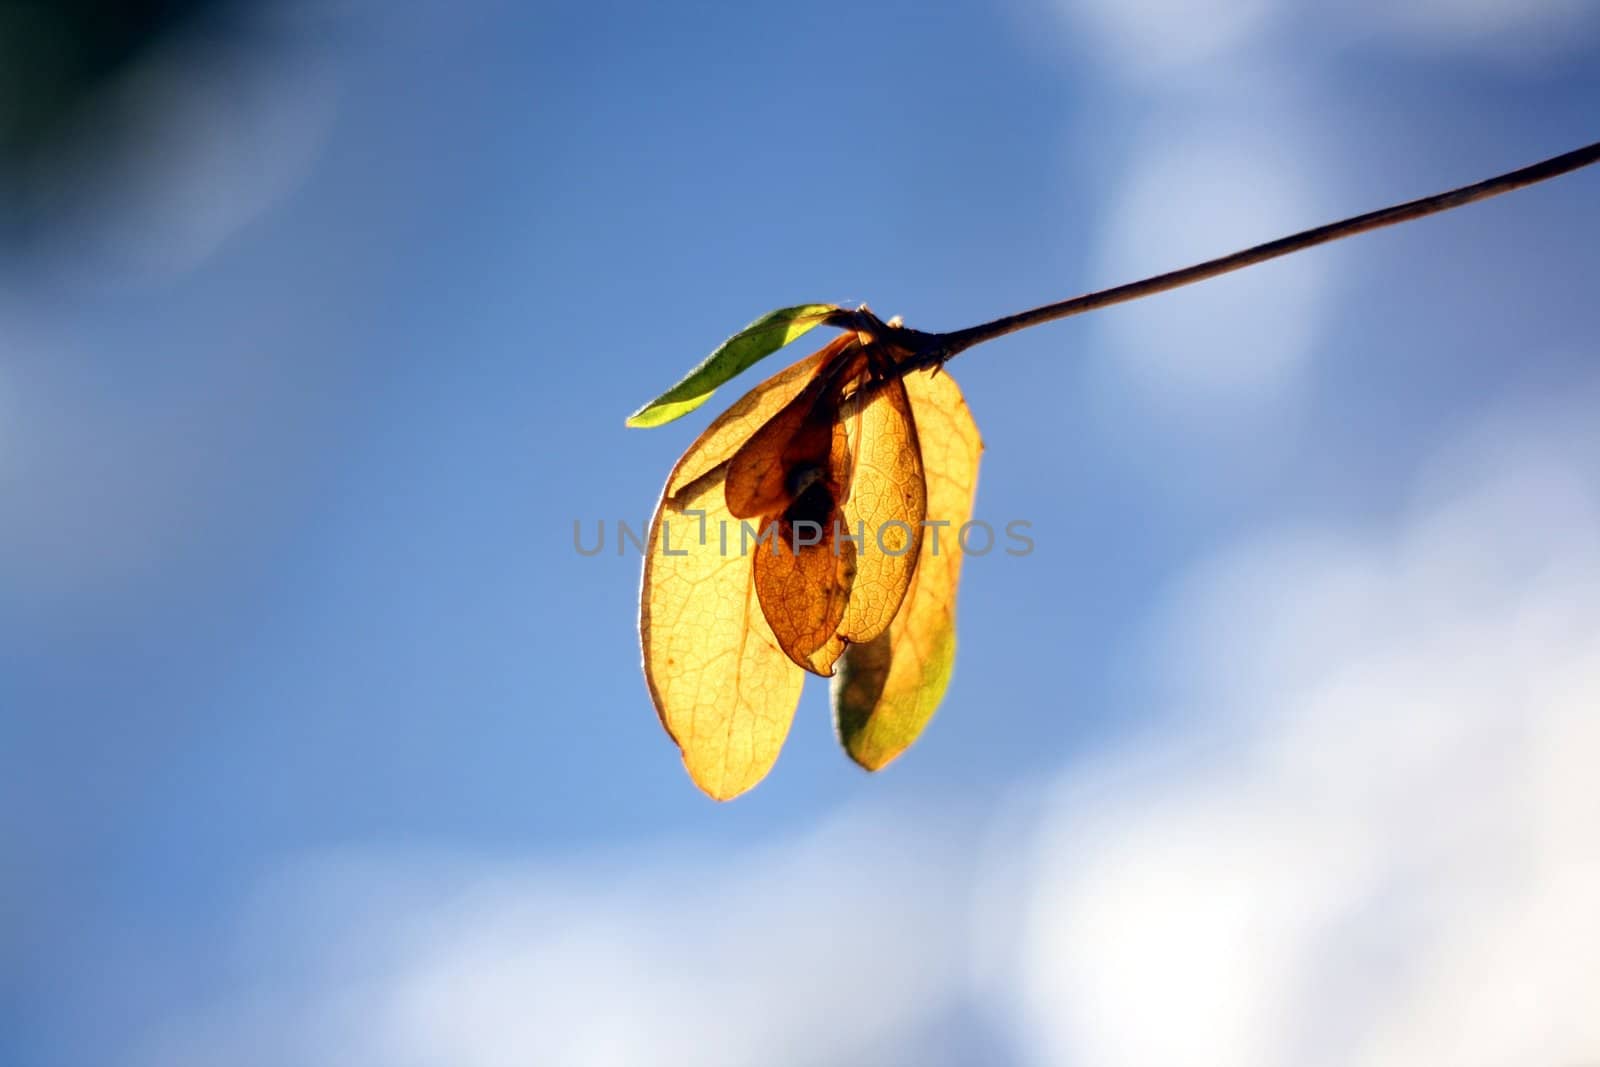 One single maple seed illuminated by the autumn sun